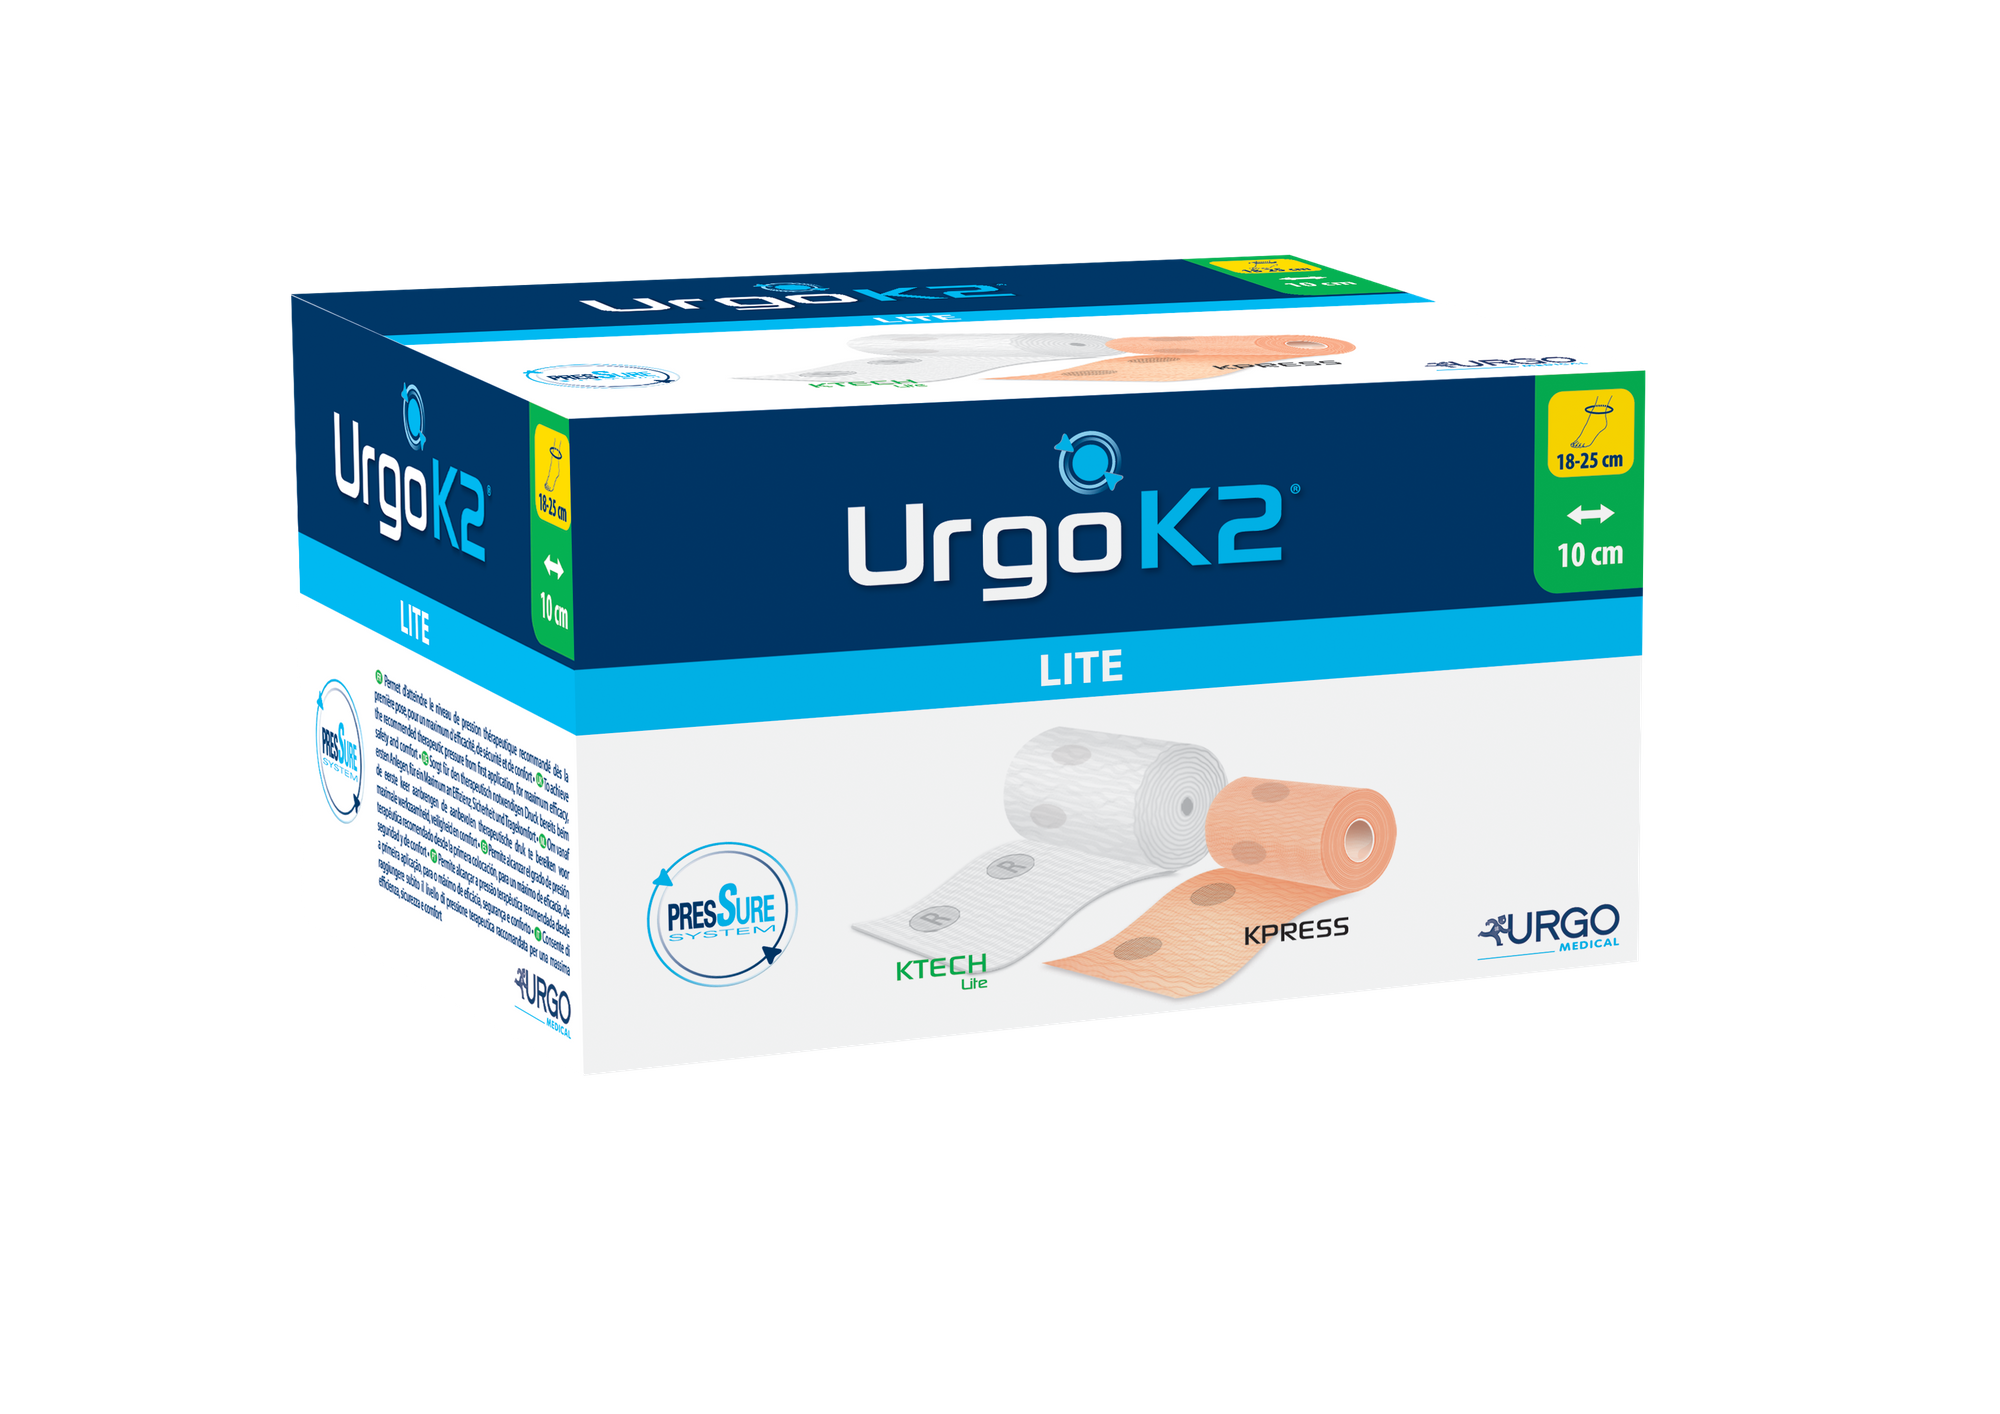 UrgoK2 Lite Kompressionssystem, Knöchelumfang 18-25cm, Bindenbreite 10cm